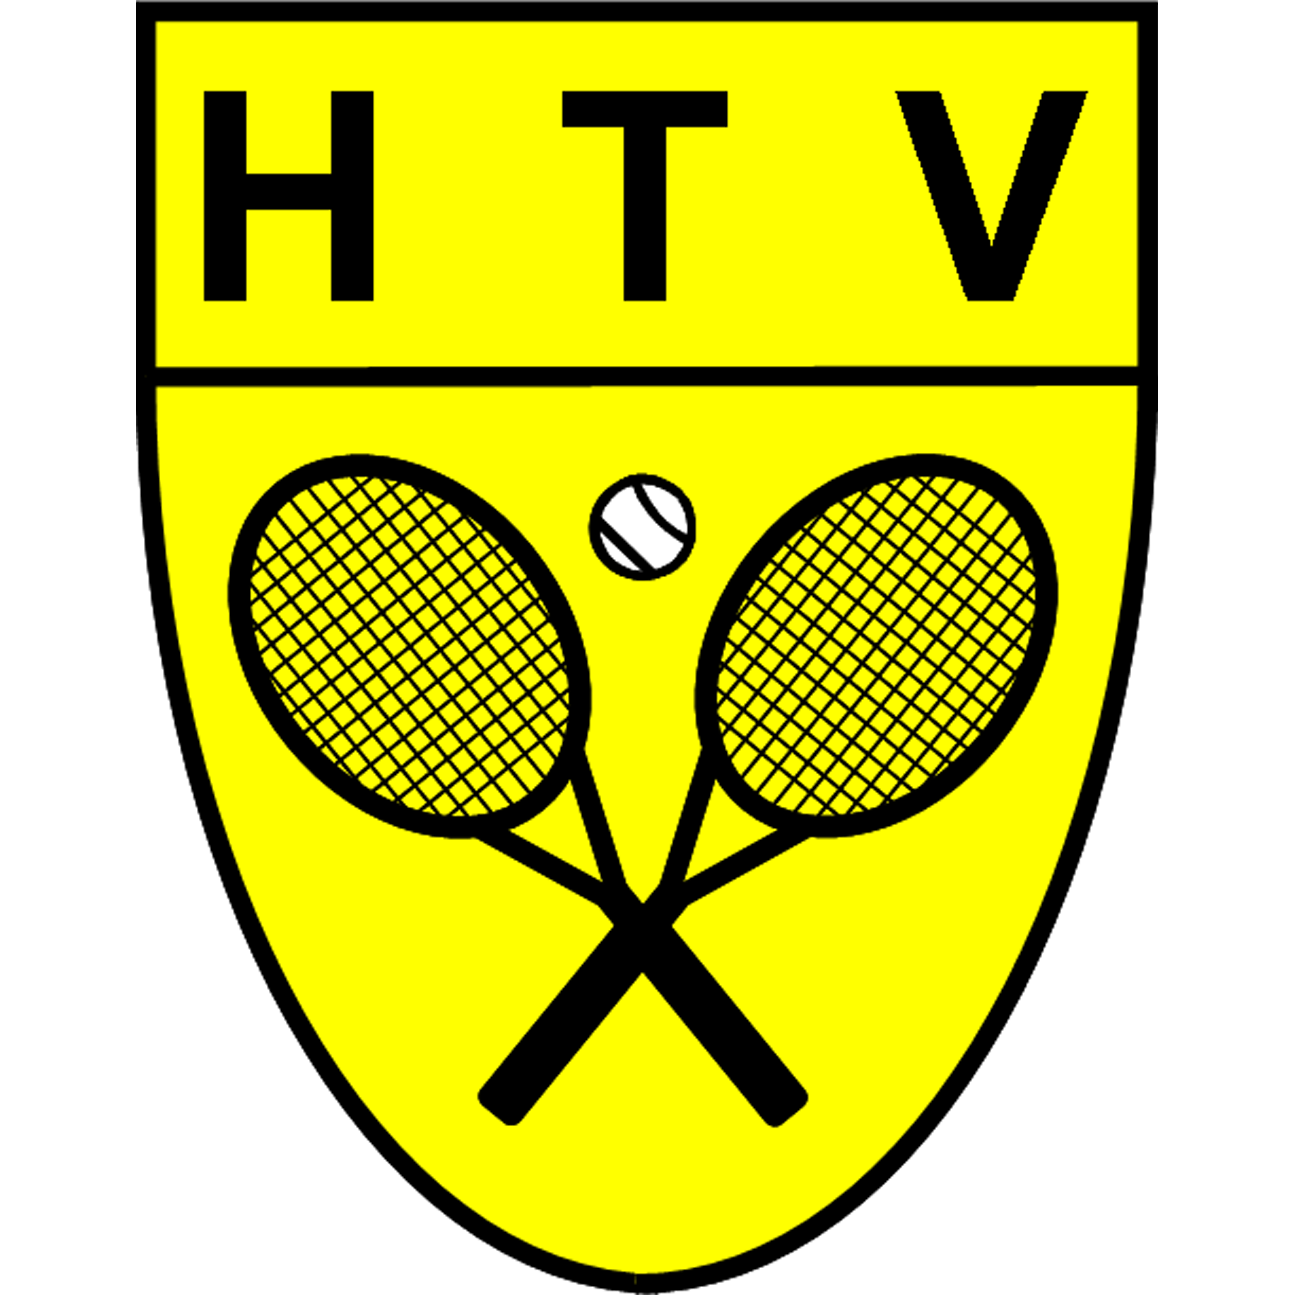 Logo HTV Halsteren